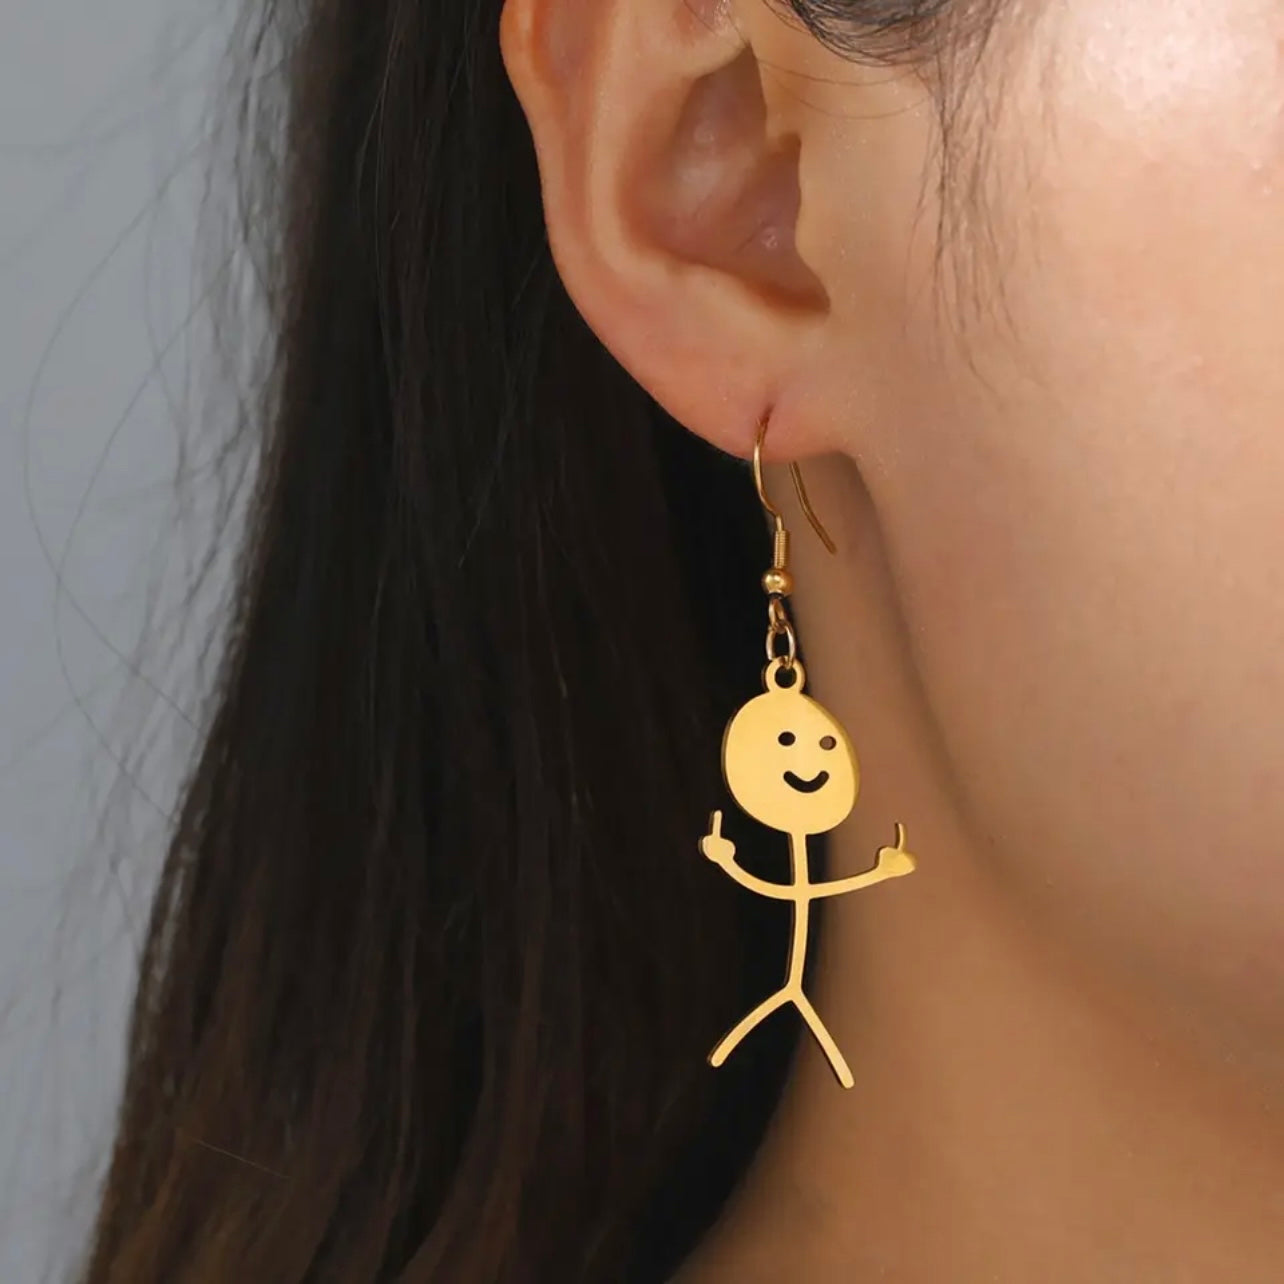 DILIGAF Earrings - Sassy Earrings, Handmade Earrings, Middle Finger, Stick Person